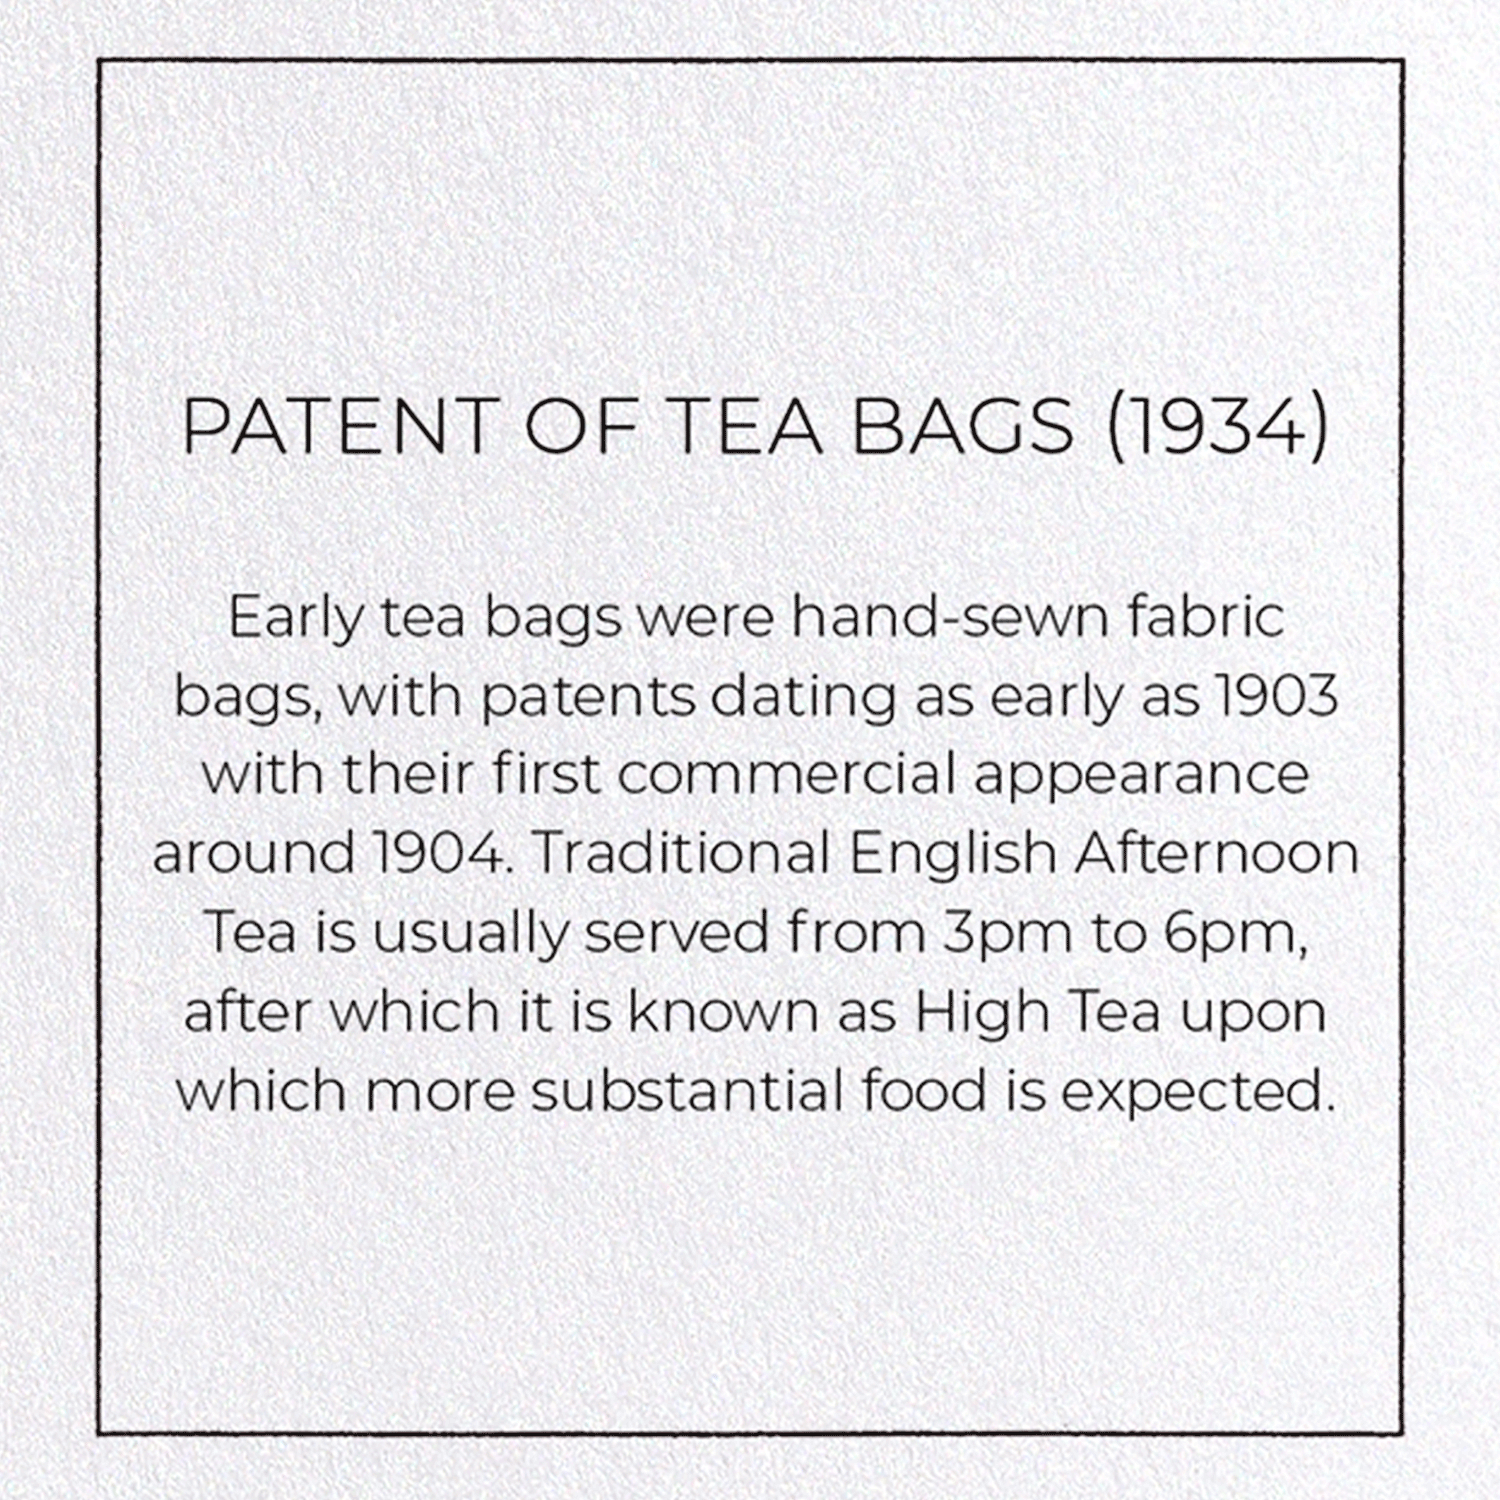 PATENT OF TEA BAGS (1934)